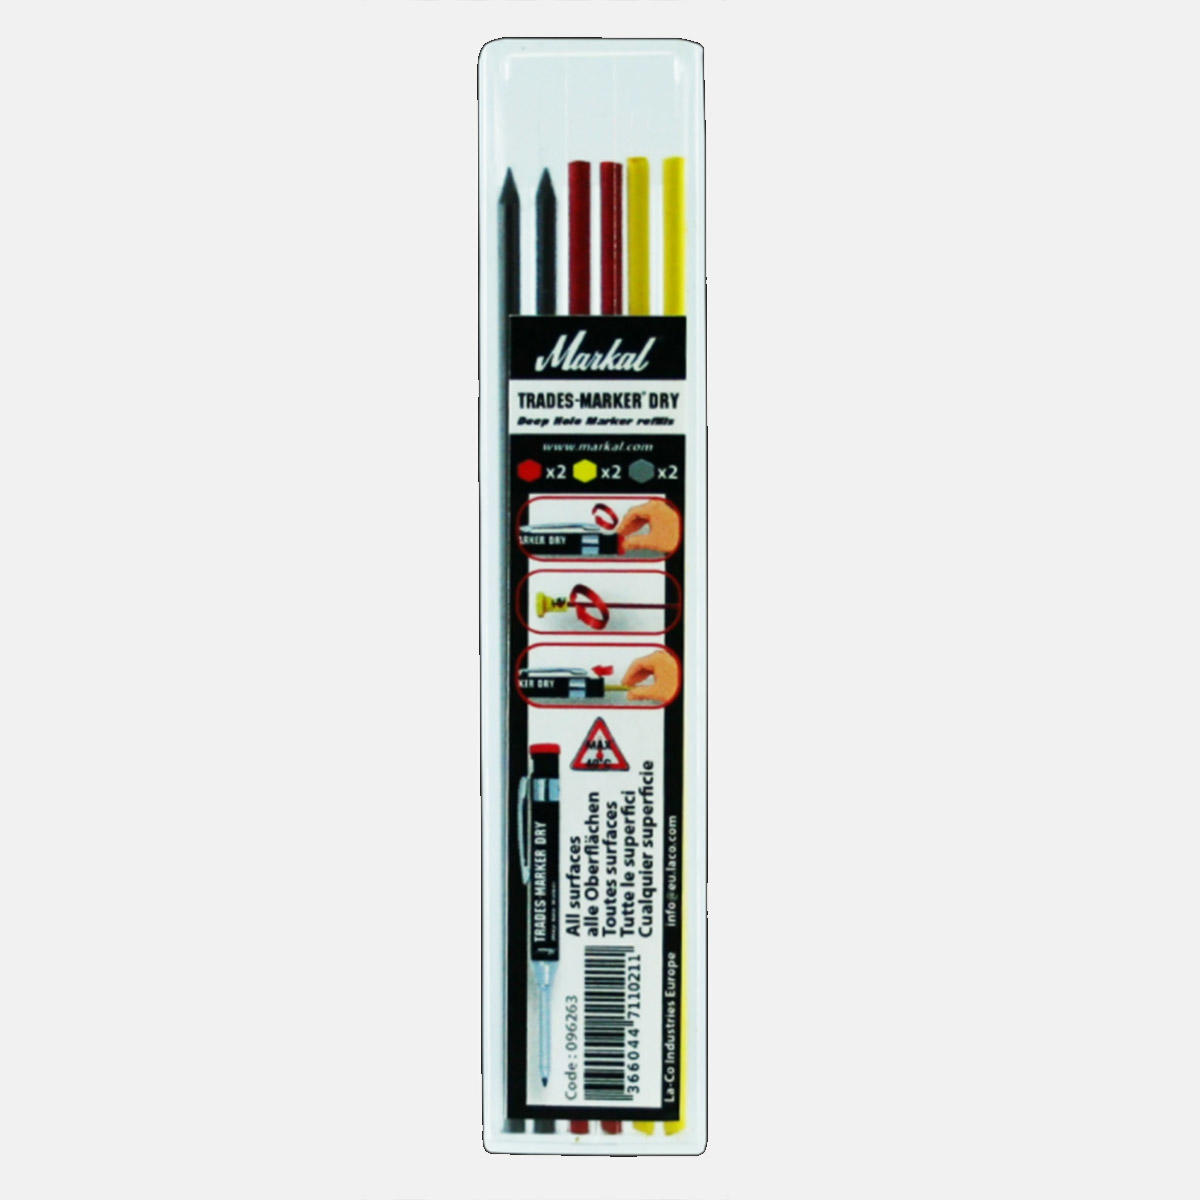 Графитовые стержни для маркера Trades-Marker Dry, 3 цвета